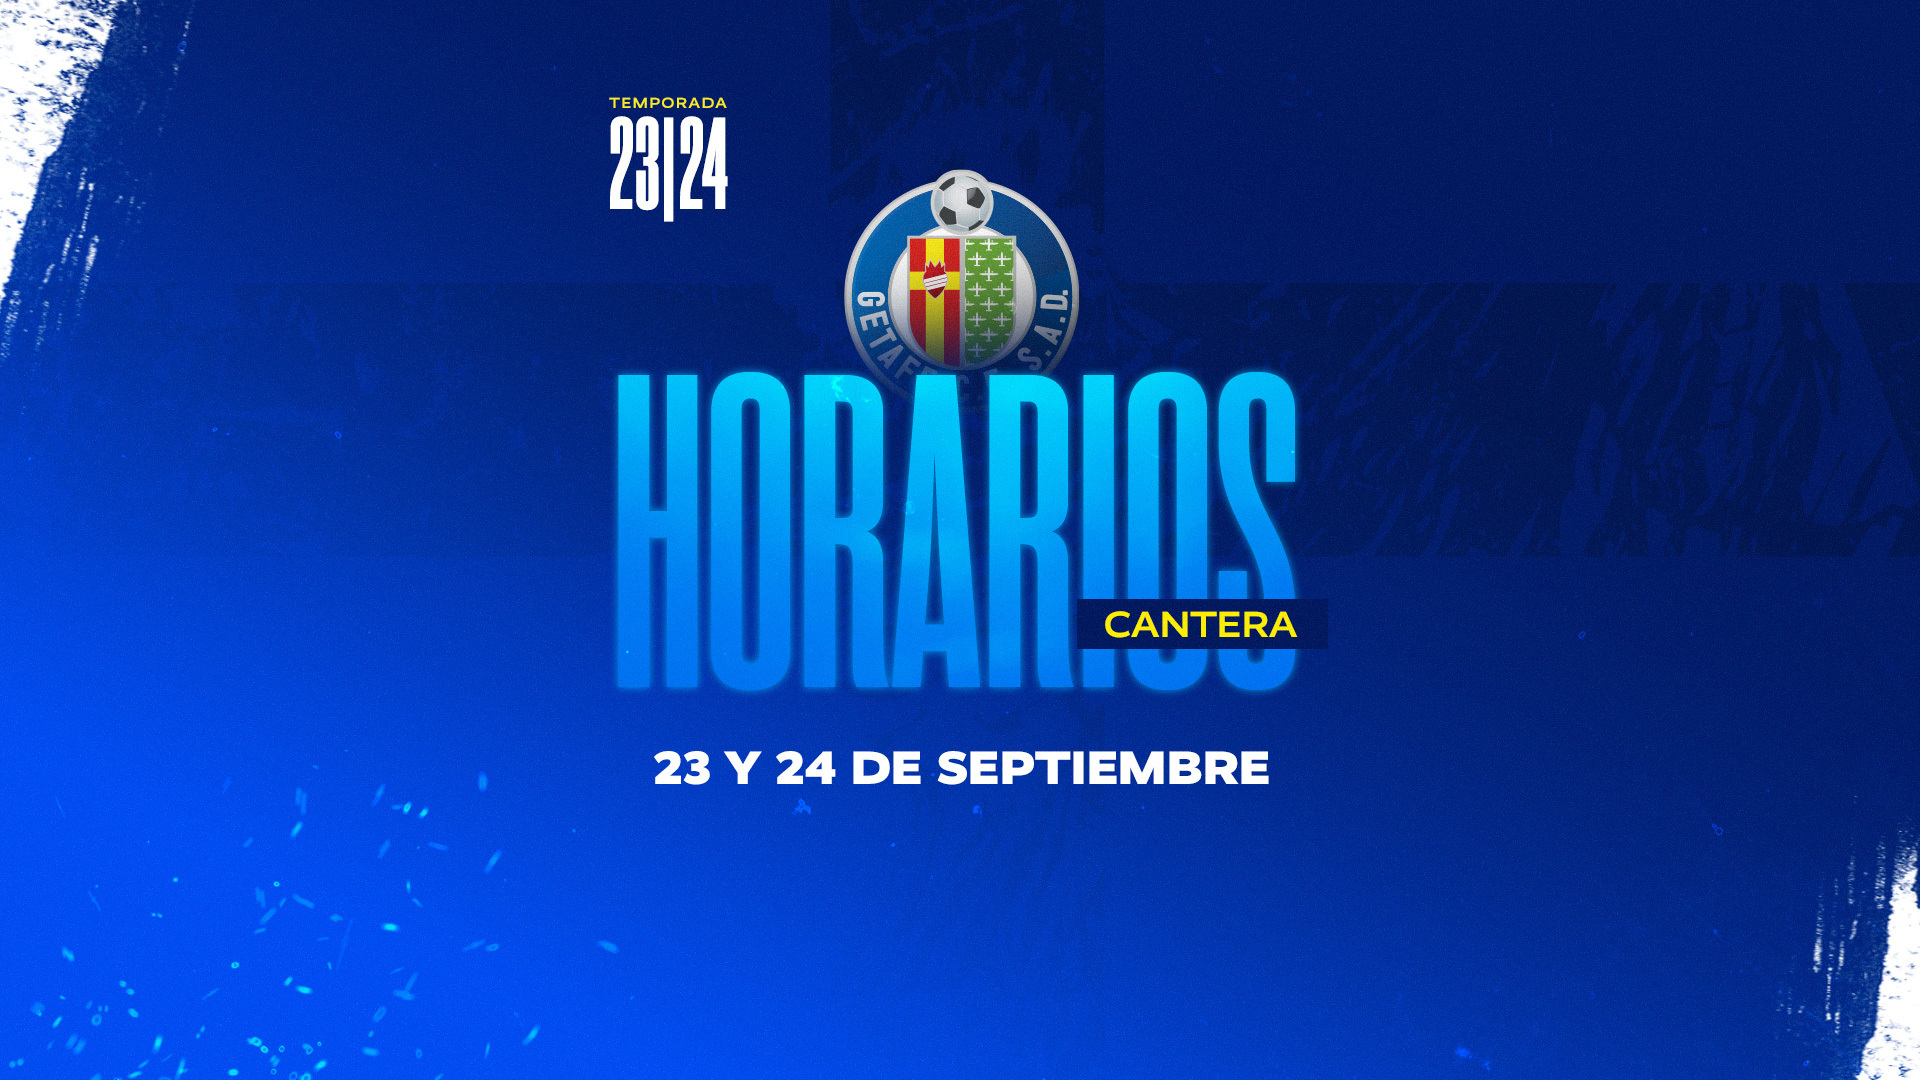 Horarios Cantera | 23 y 24 de septiembre